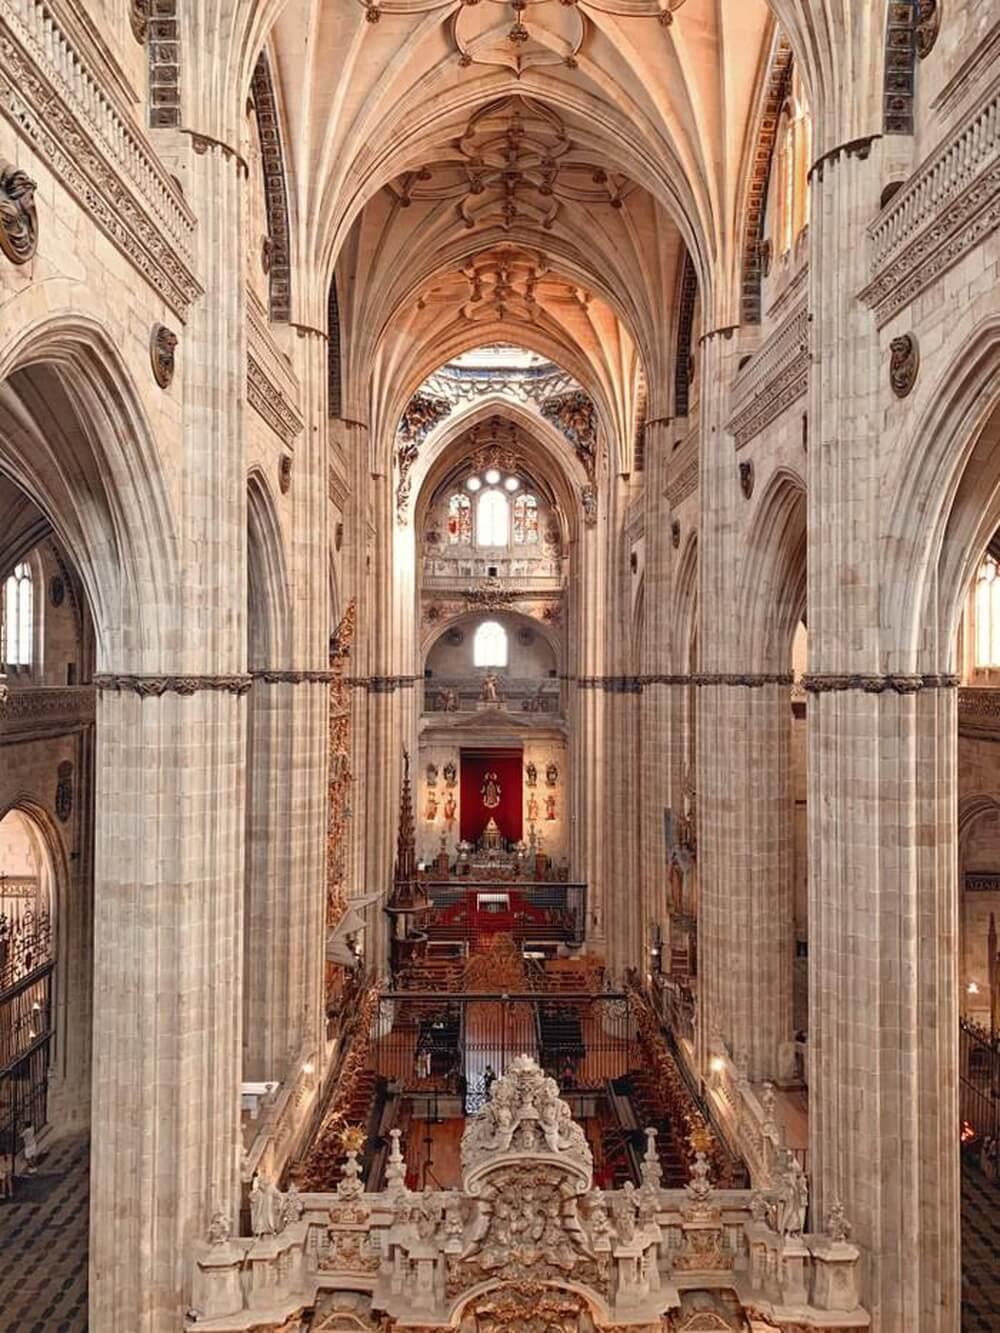  Đến “bộ đôi” nhà thờ Old and New Cathedral of Salamanca